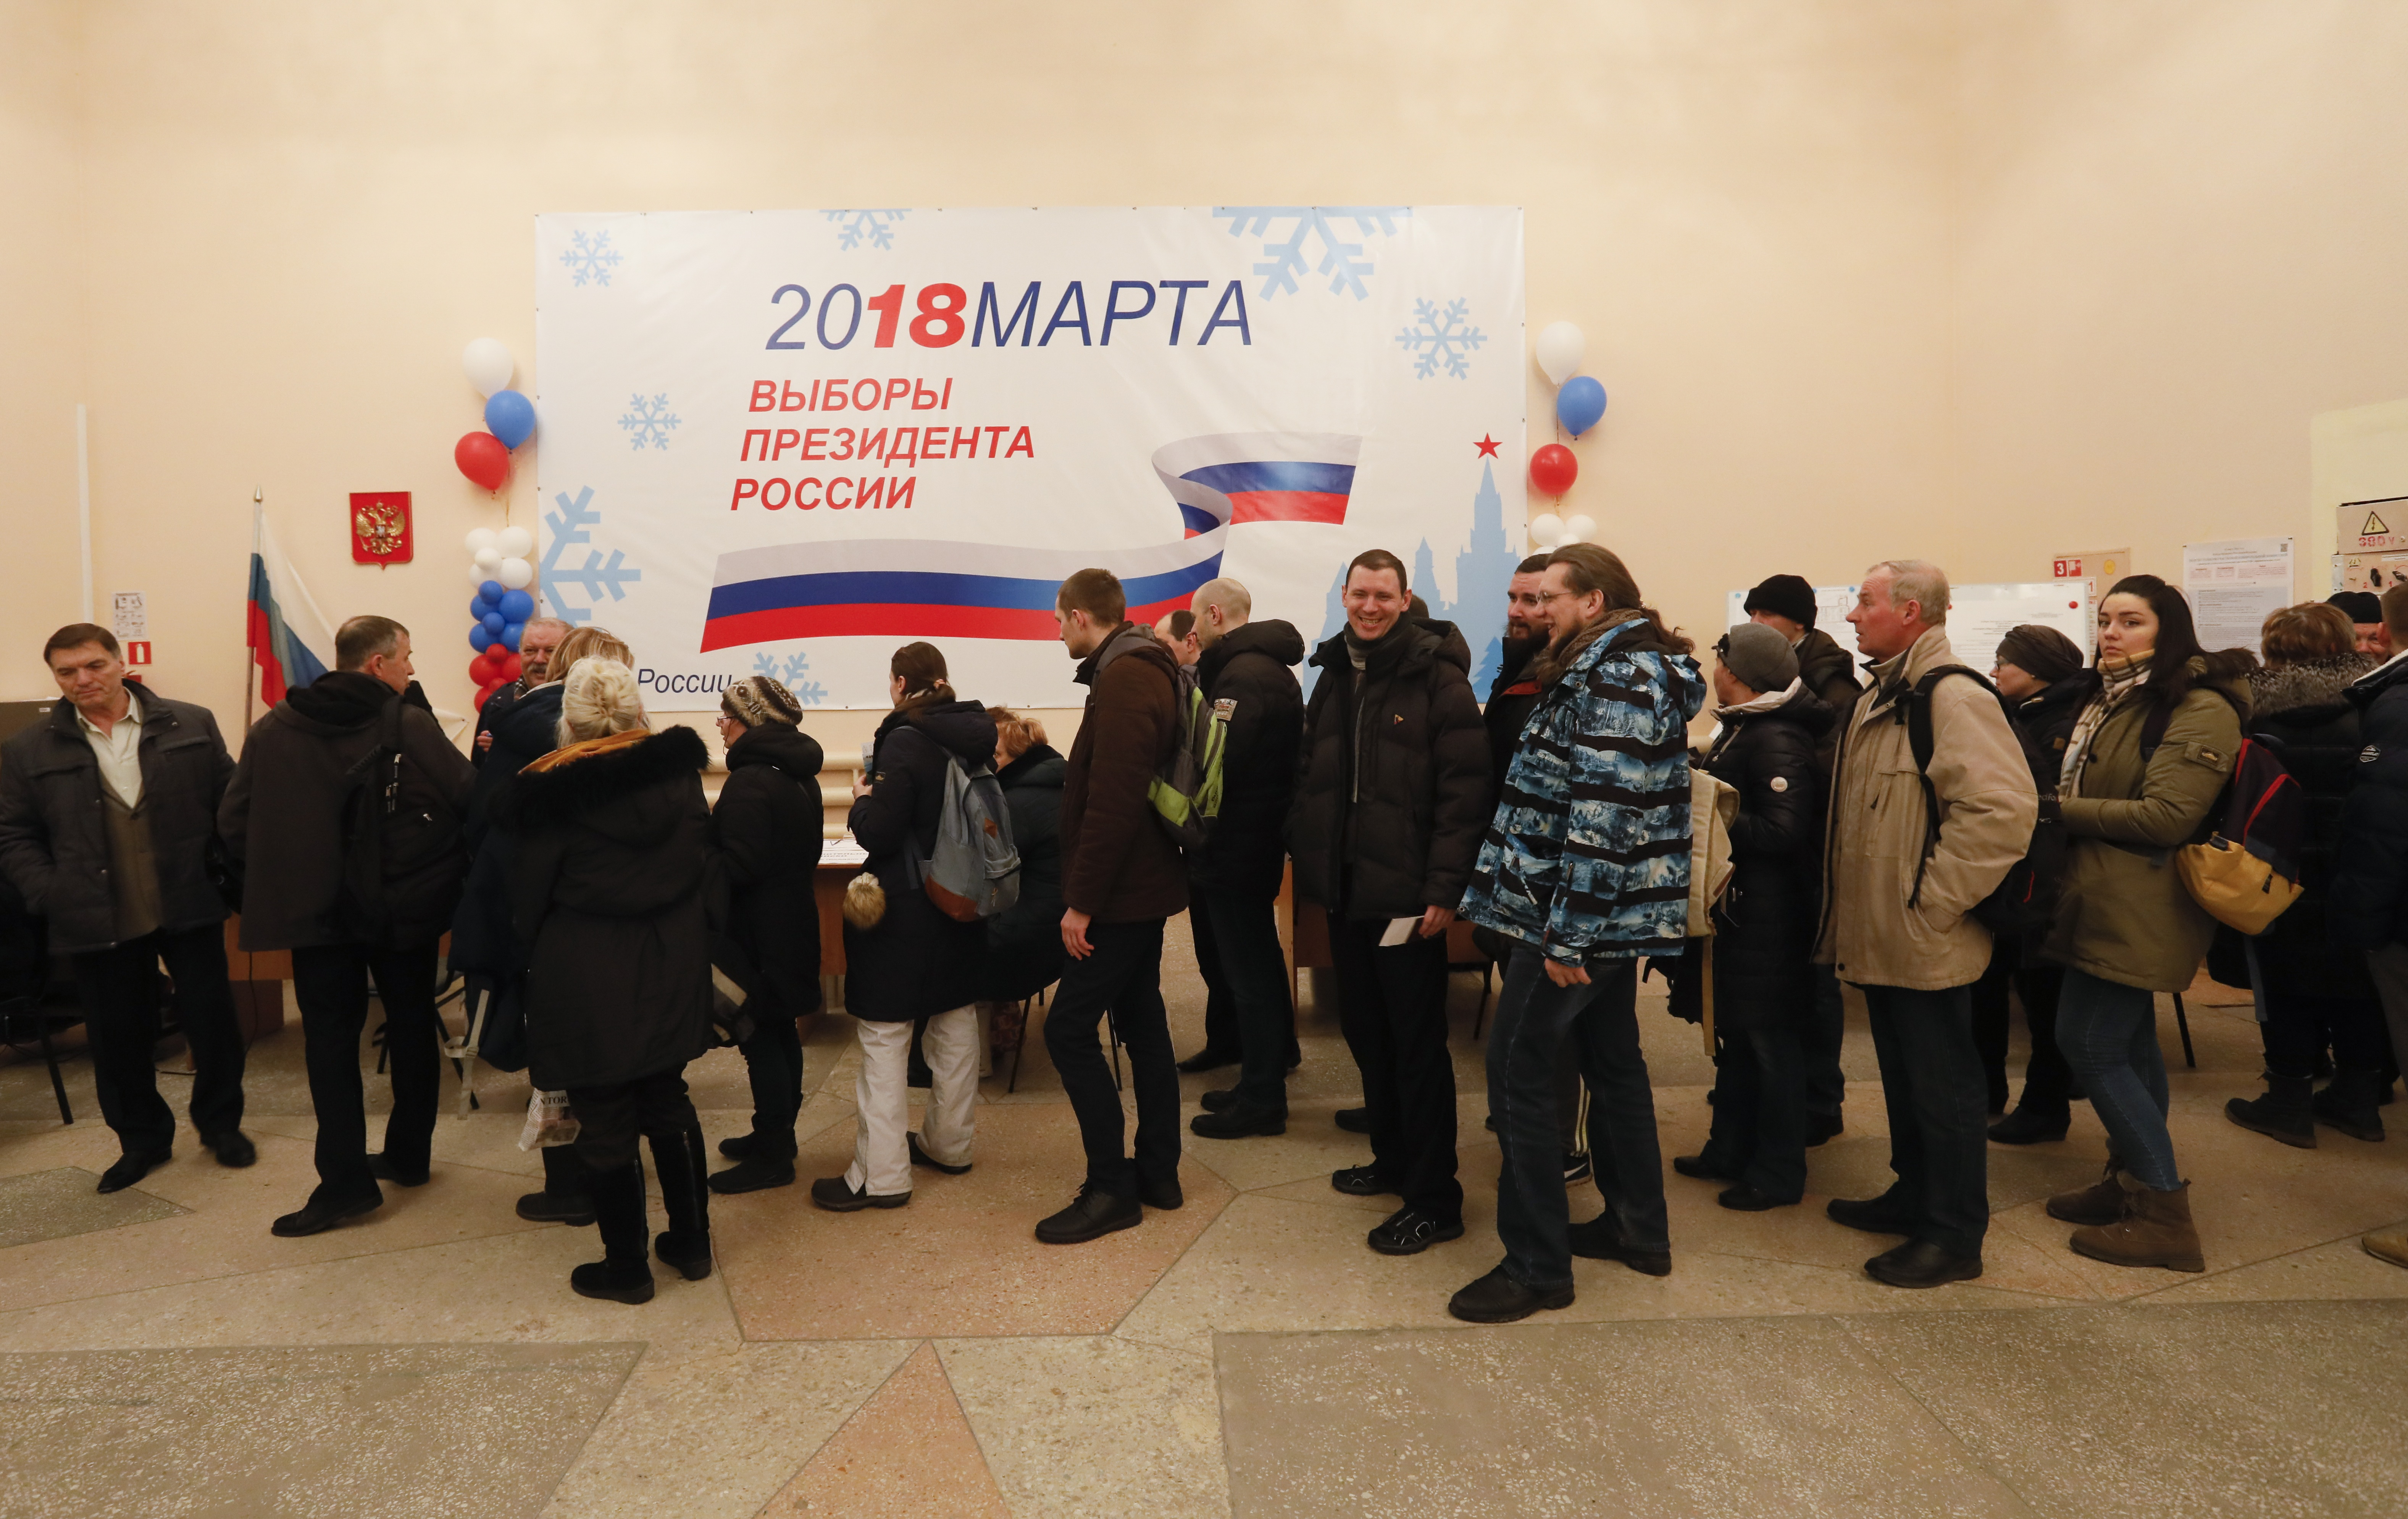 طابور من الناخبين للادلاء بأصواتهم فى الانتخابات الروسية